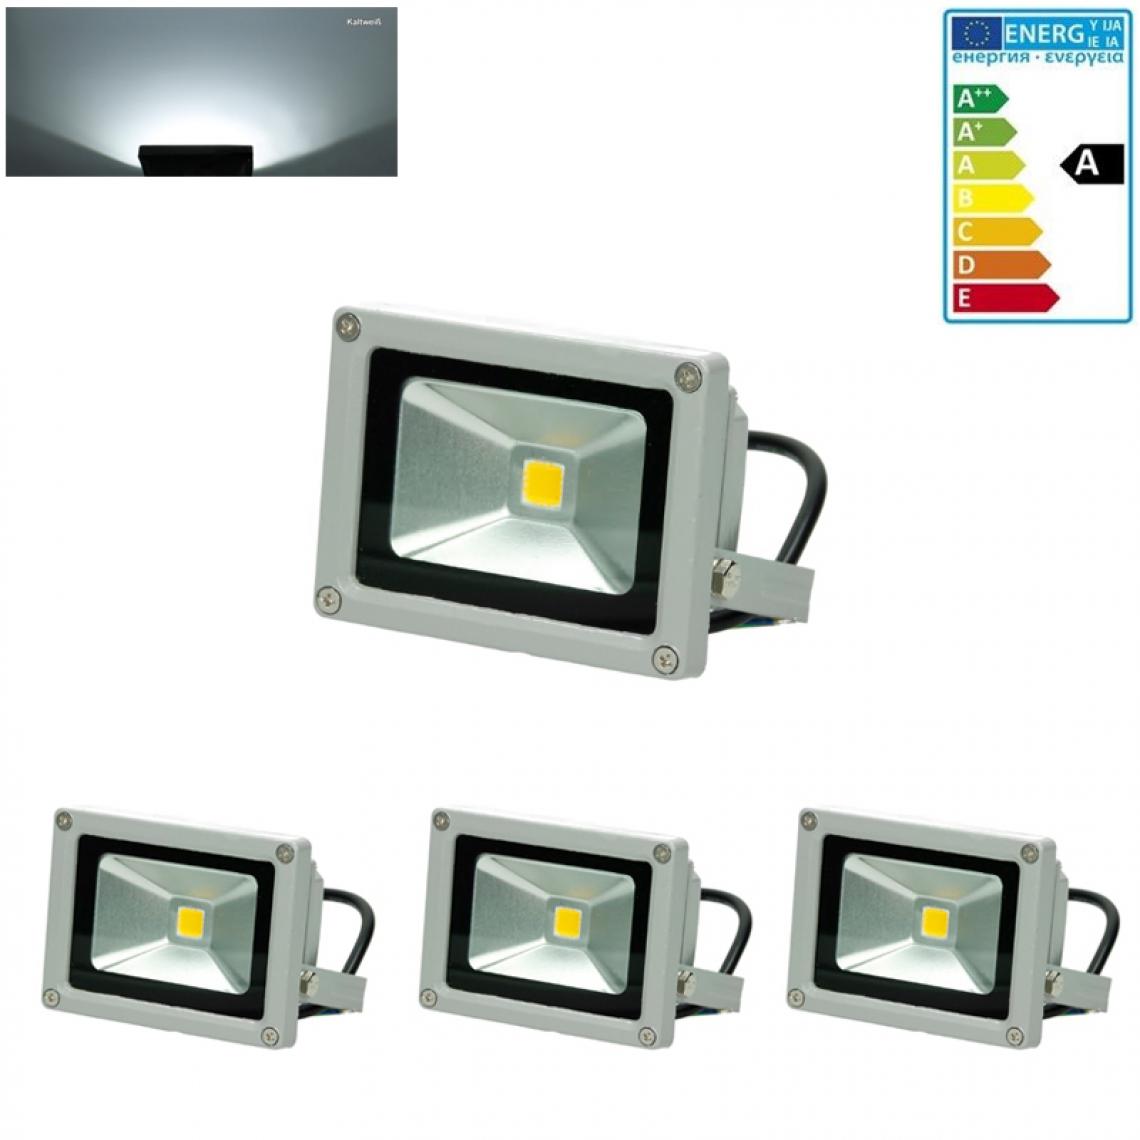 Ecd Germany - 3x LED Projecteur lumière extérieure spot éclairage 10W imperméable blanc froid - Projecteurs LED